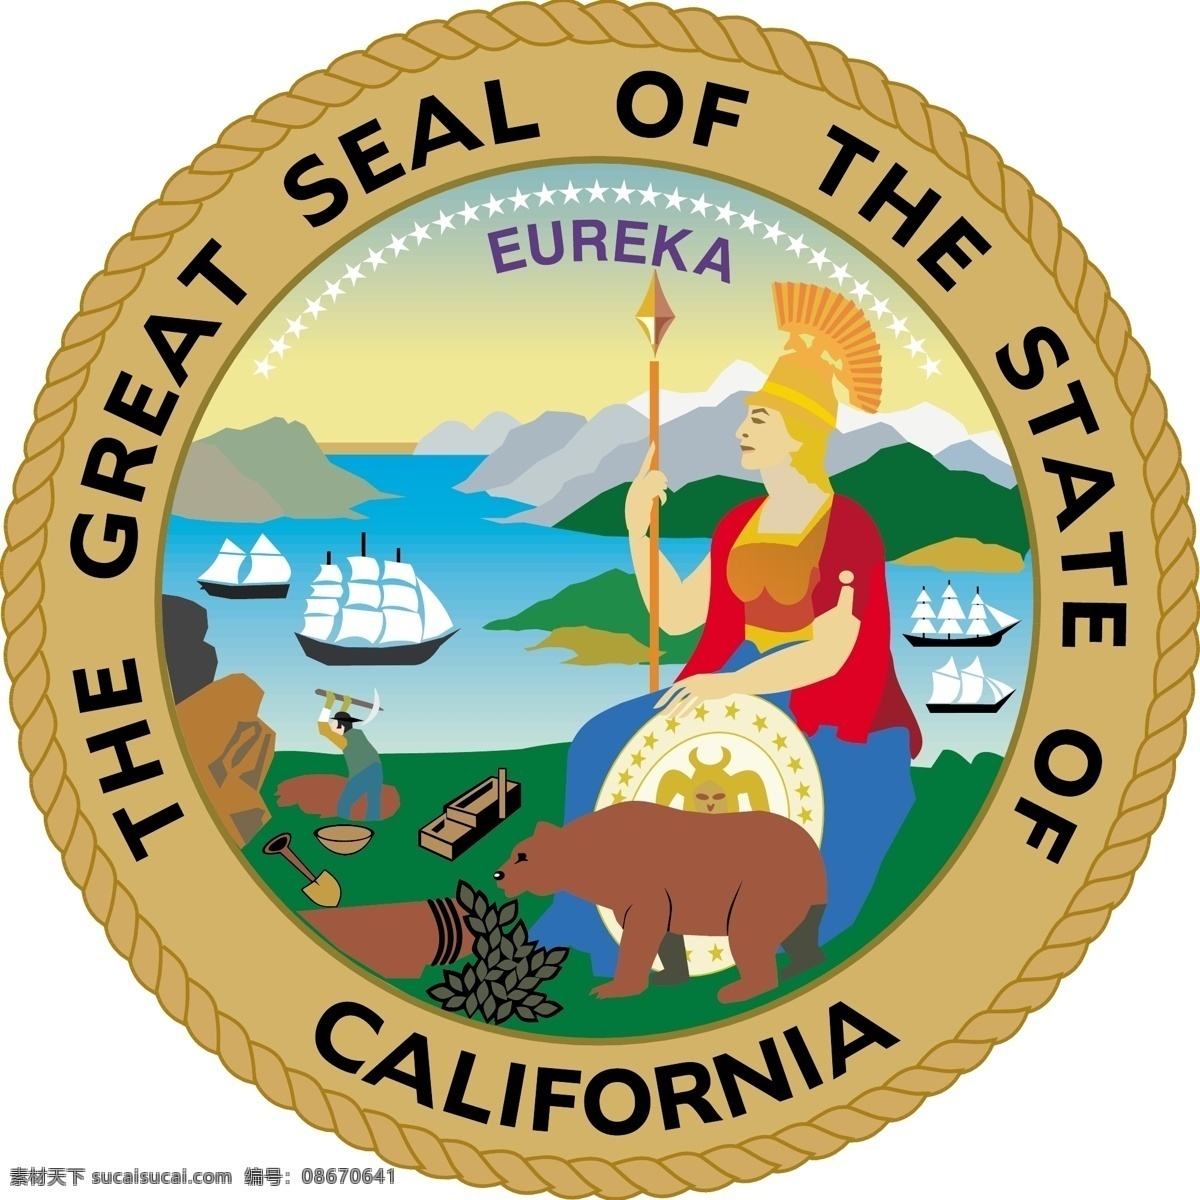 加利福尼亚州 大 密封 自由 加利福尼亚 标志 状态 大印 州 印 logo psd源文件 logo设计